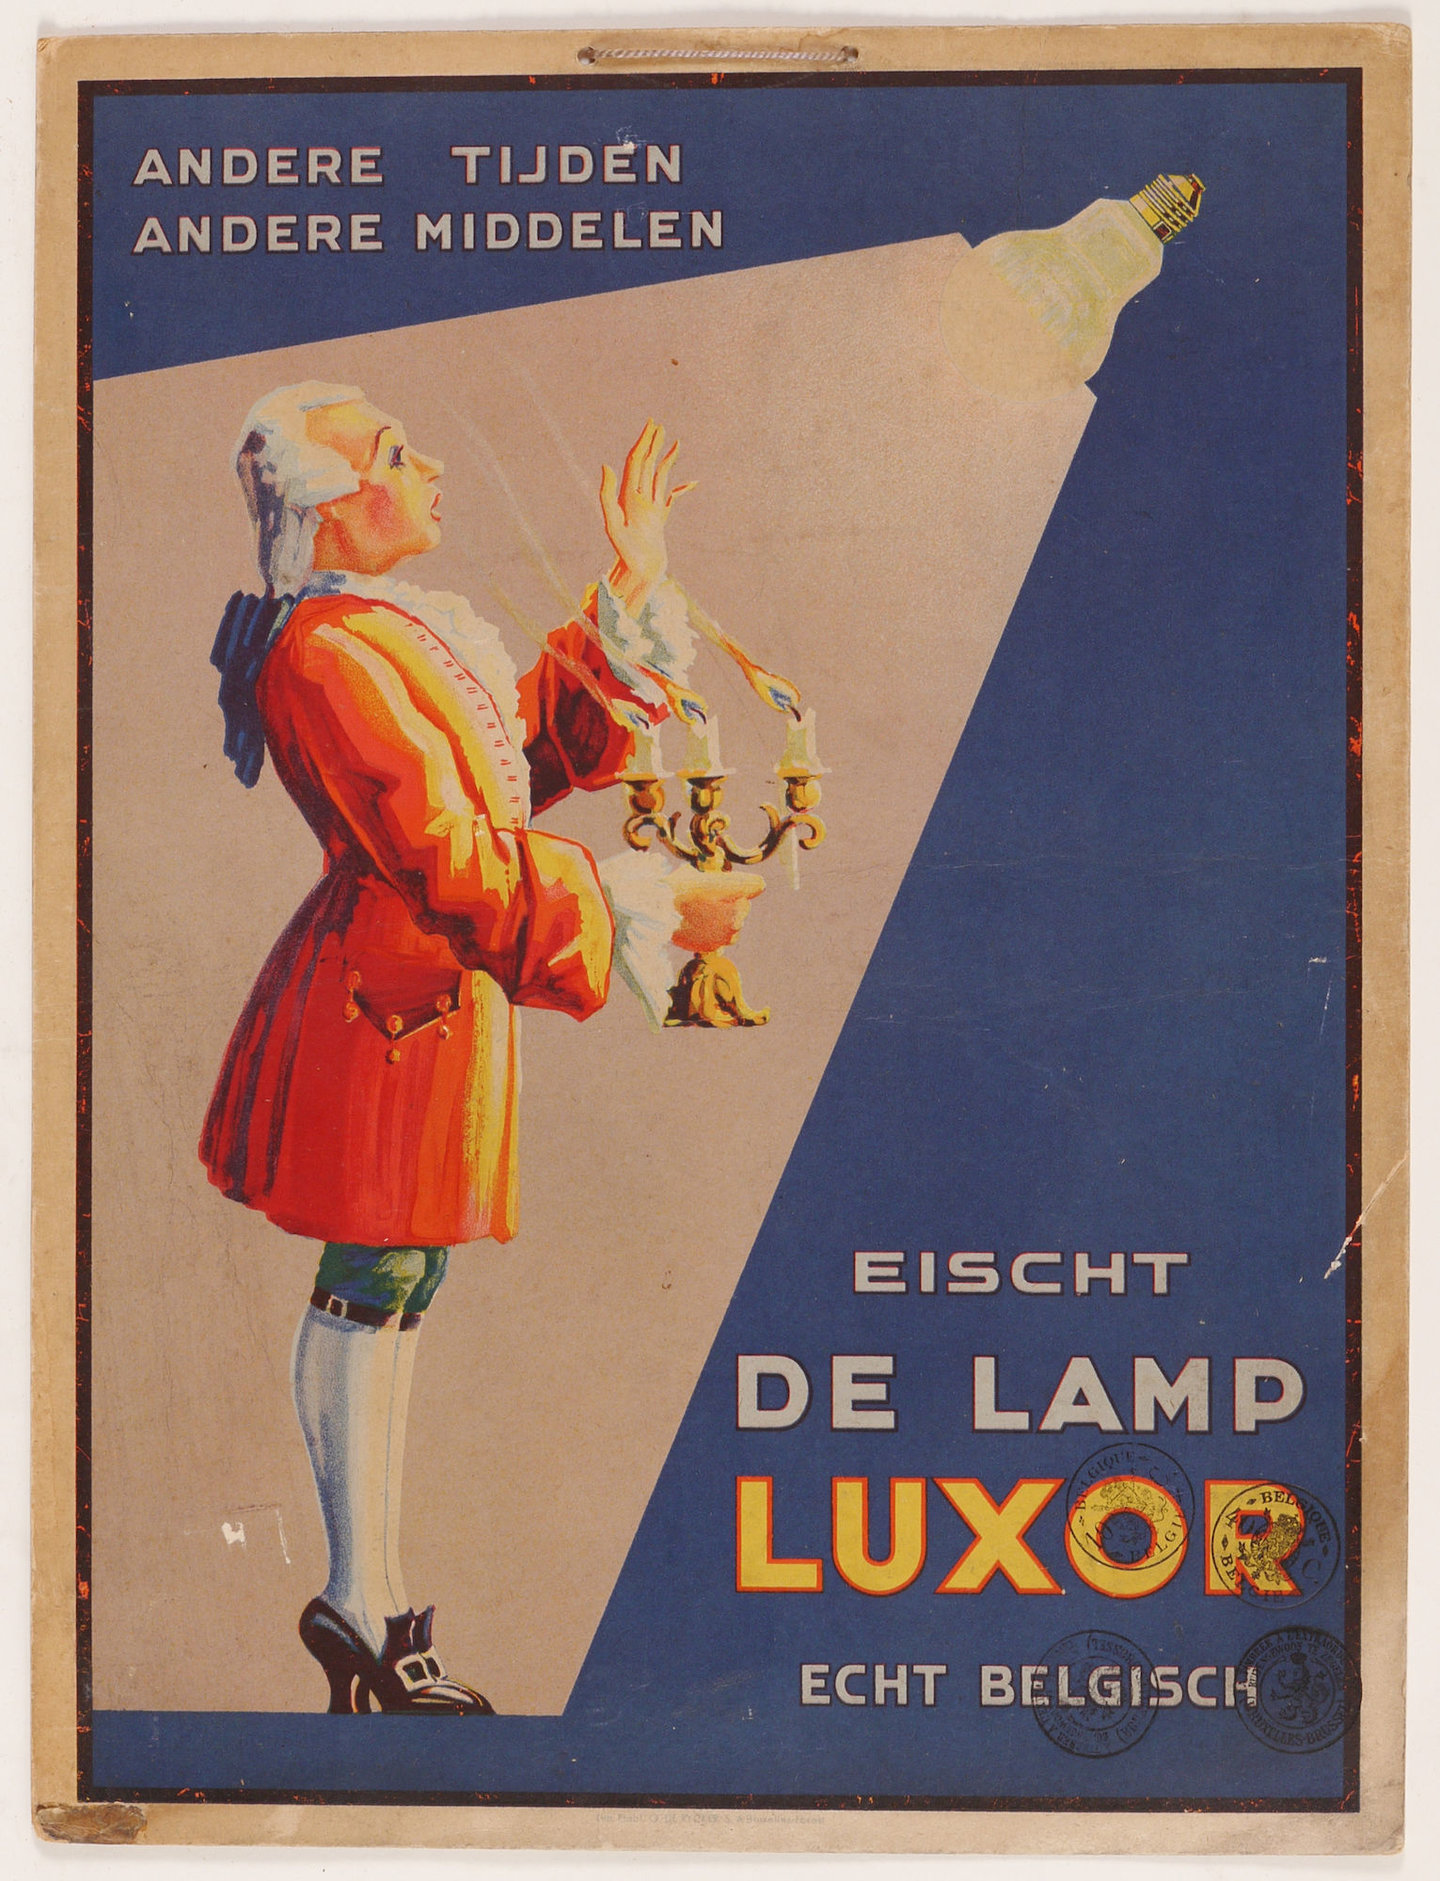 Reclameprent voor lampen van het merk Luxor